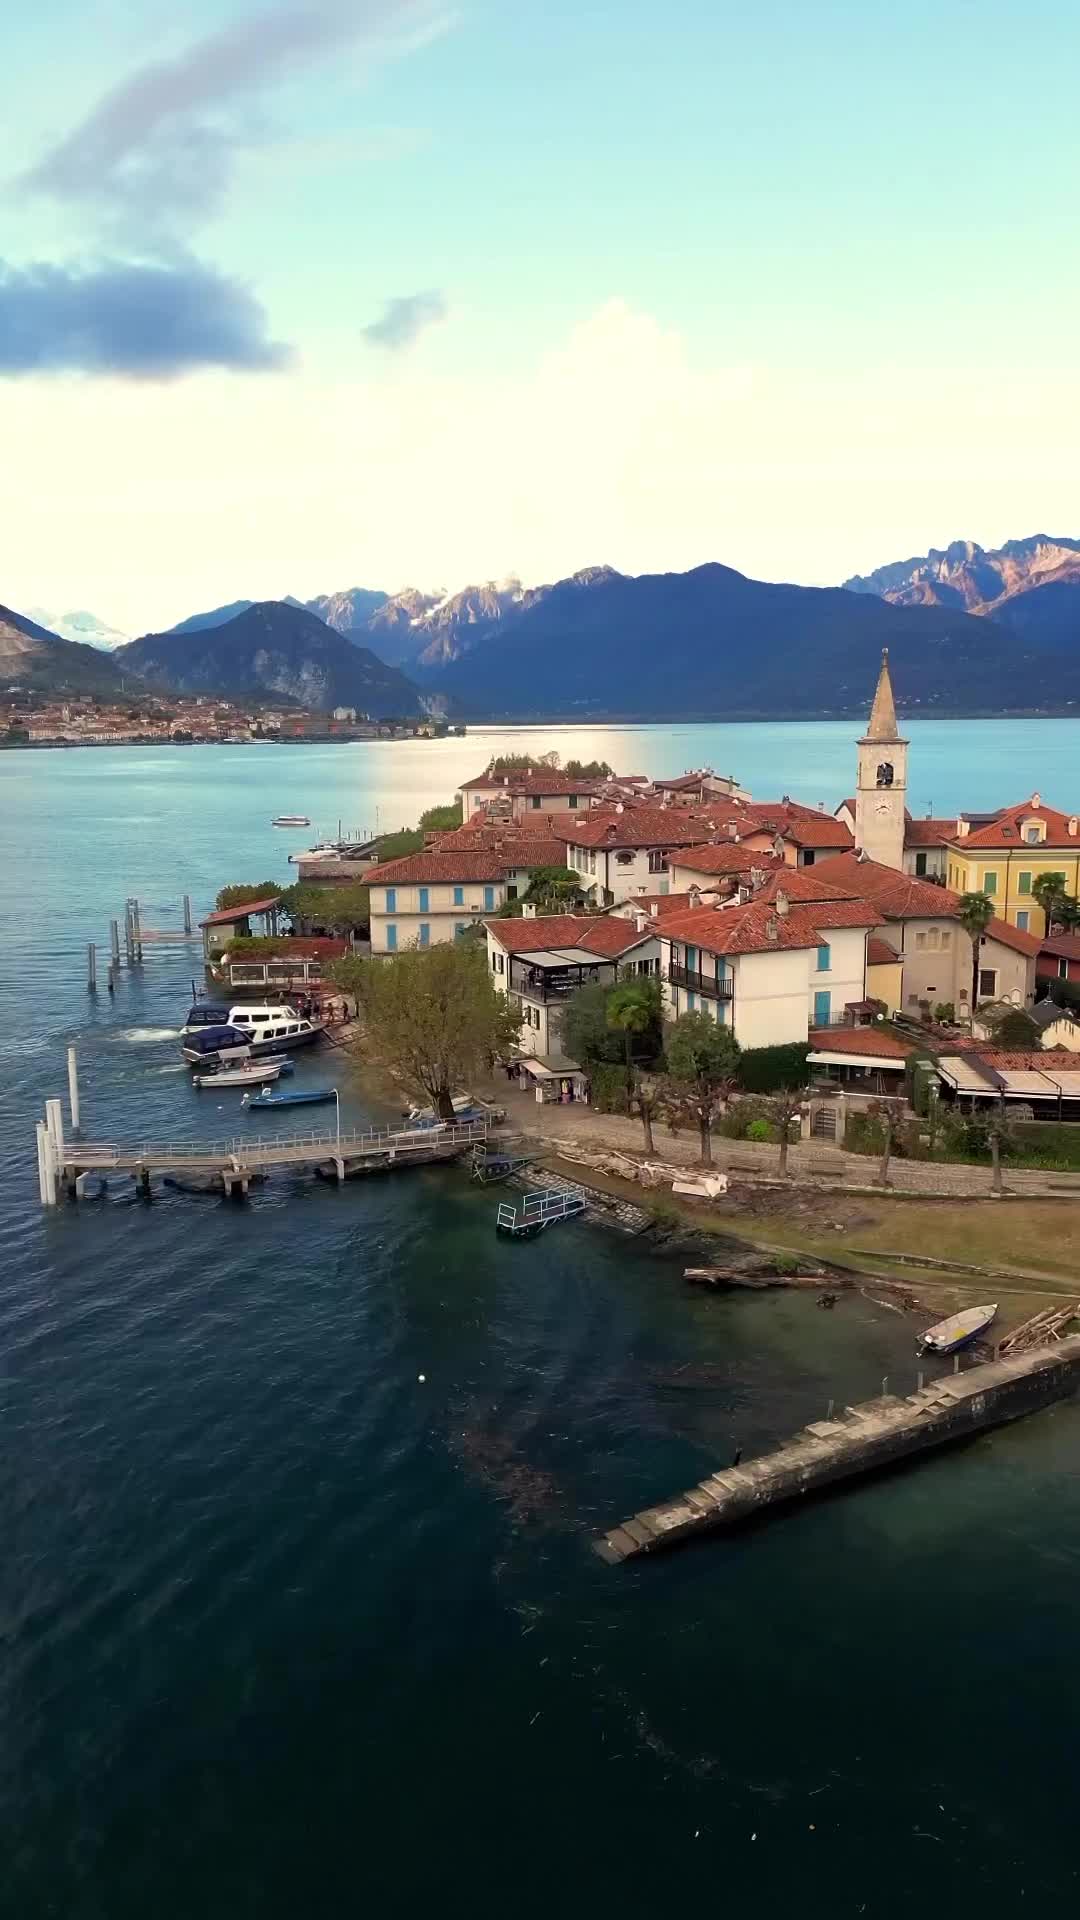 Discover L'Isola dei Pescatori in Lake Maggiore